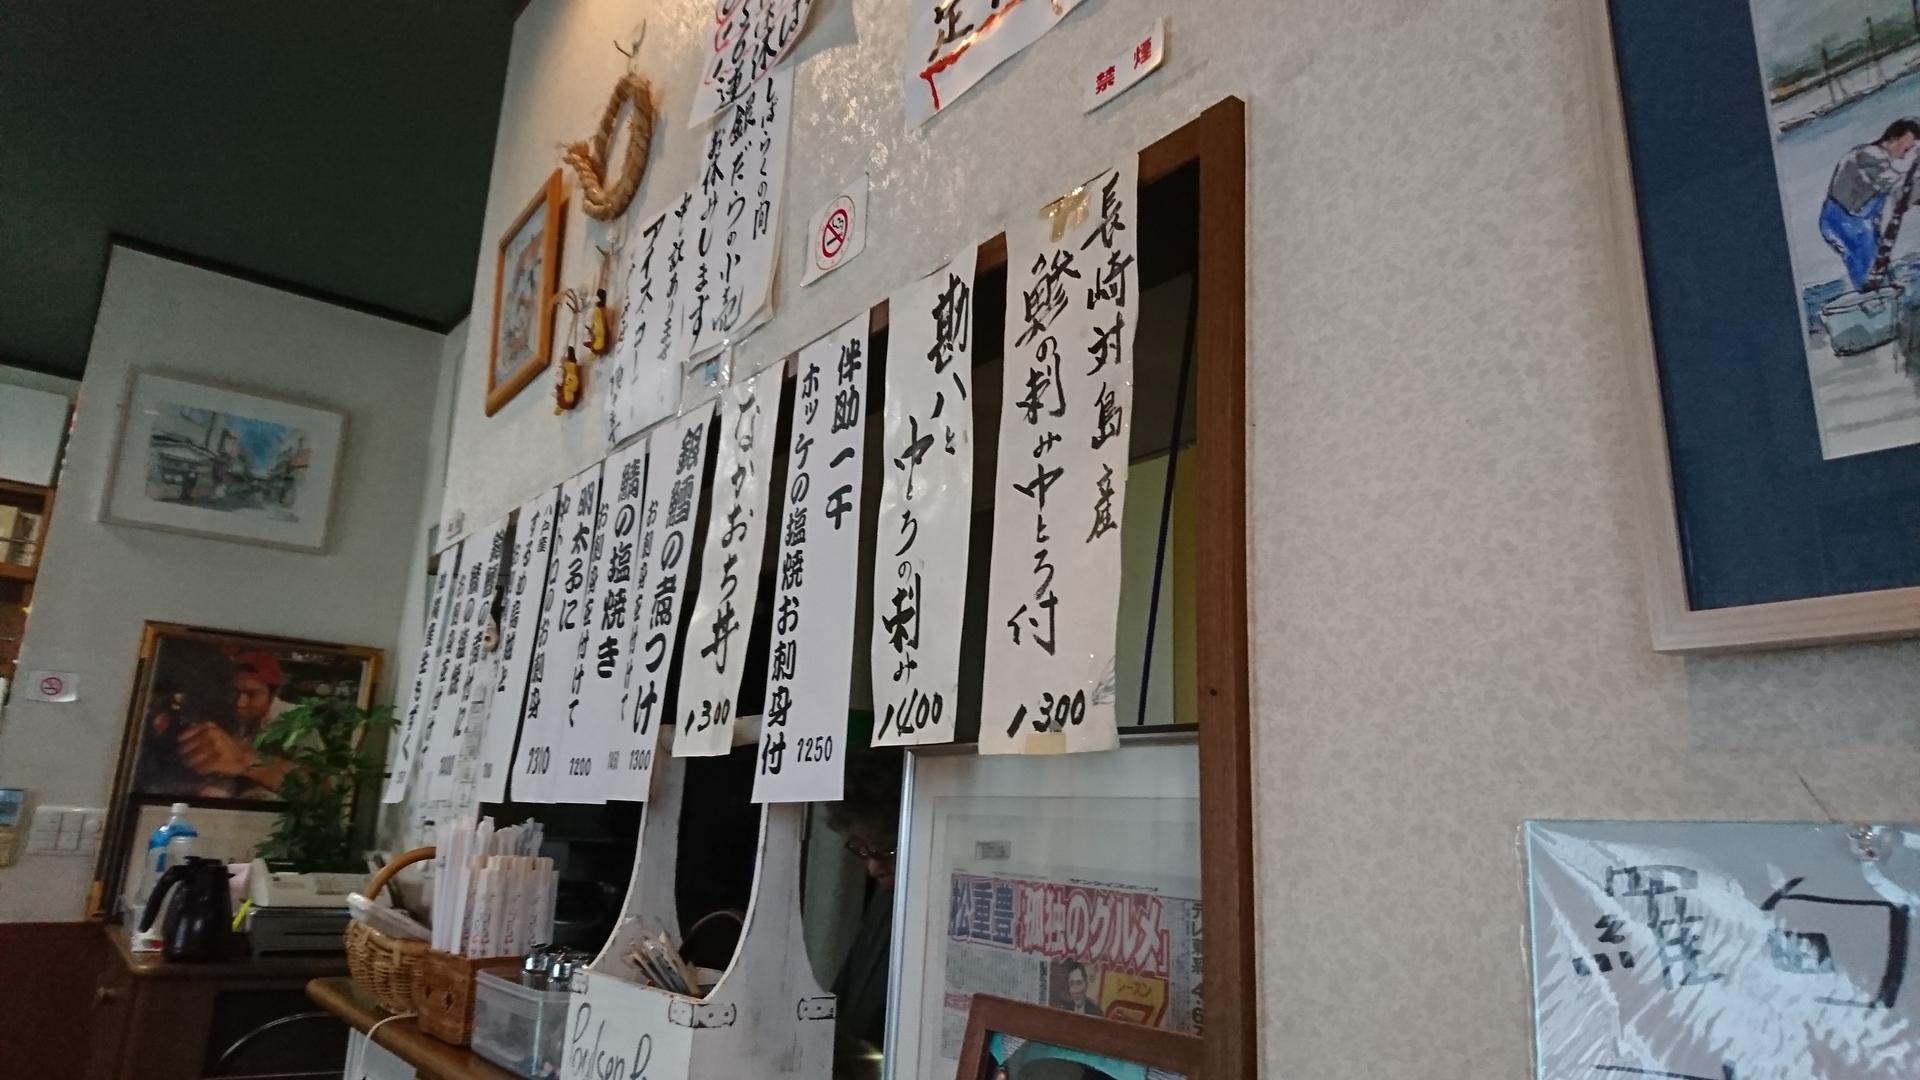 真っ黒な銀ダラ定食 魚や 羅甸 らてん 千葉県浦安 東京 近郊を食べ歩くブログ